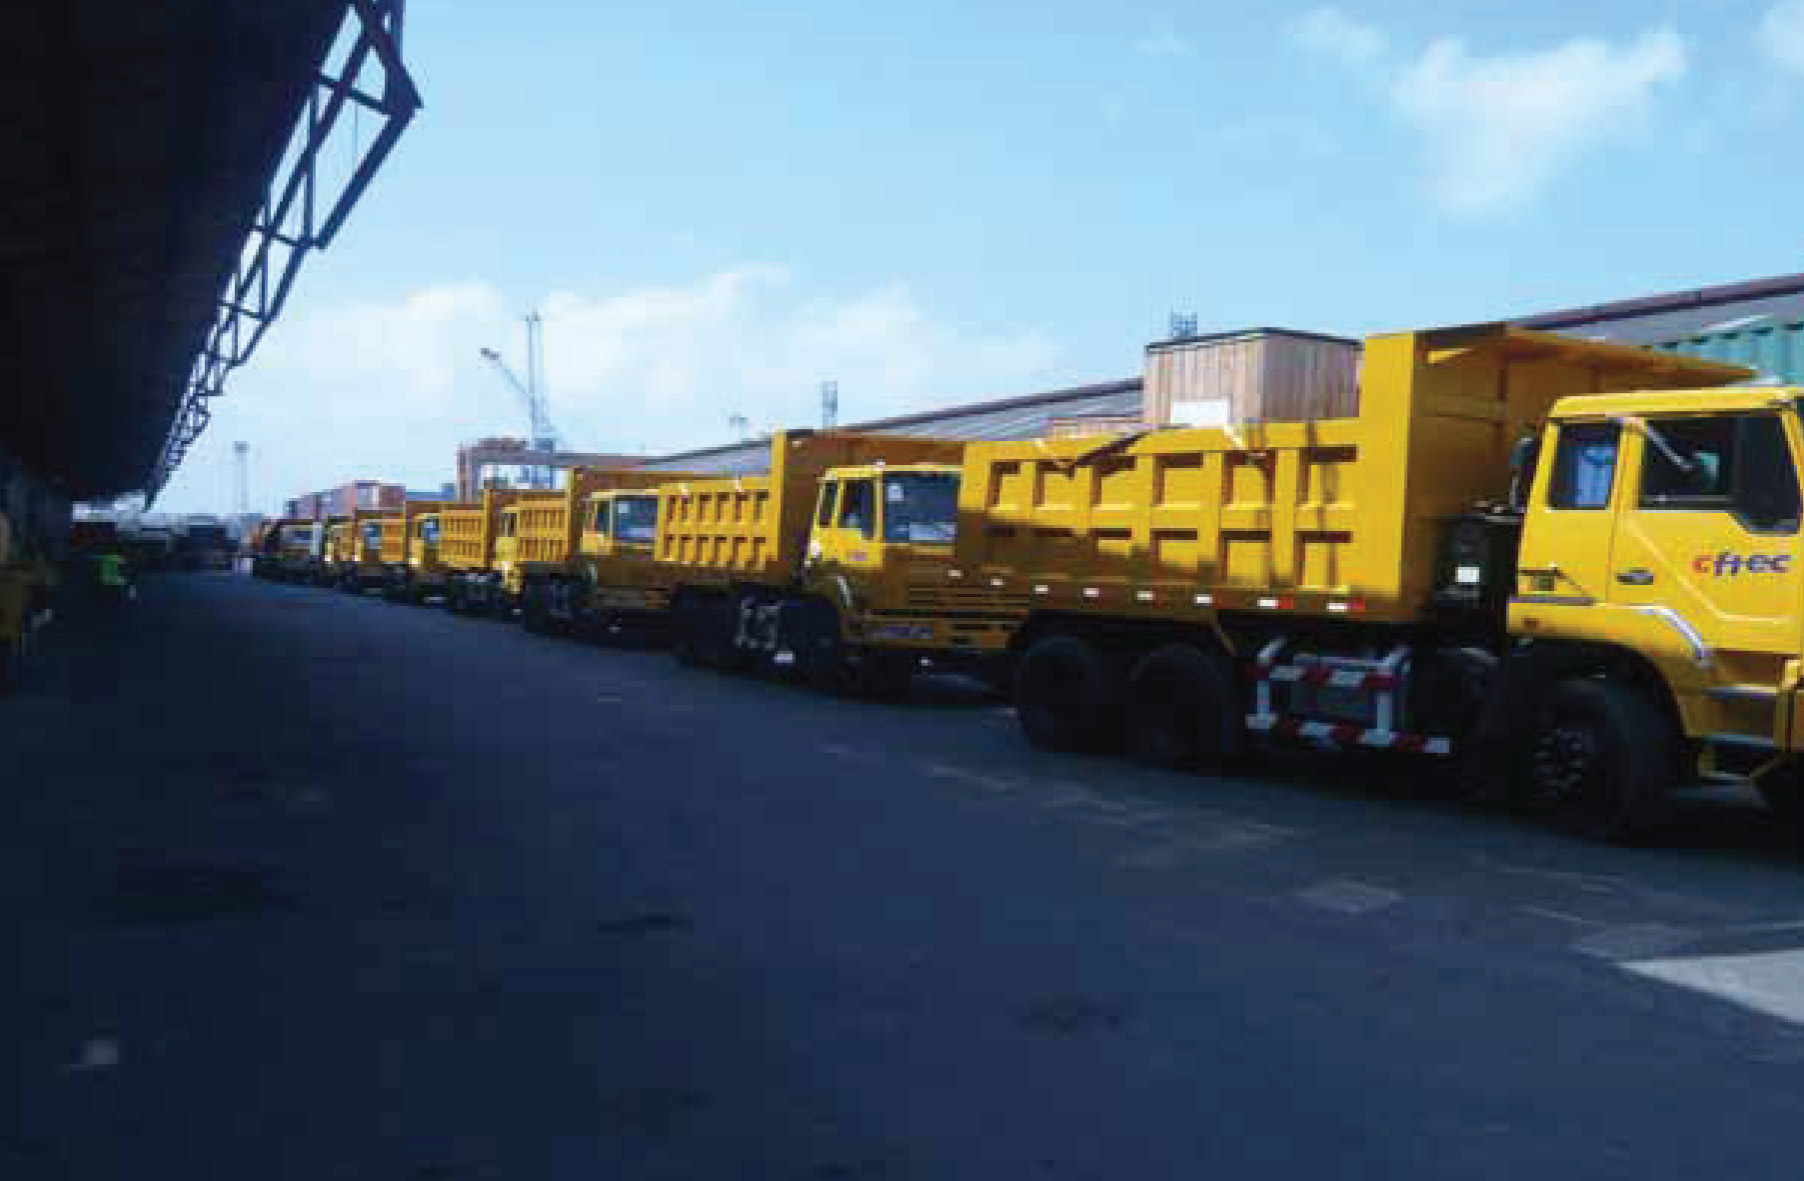 Company Trucks